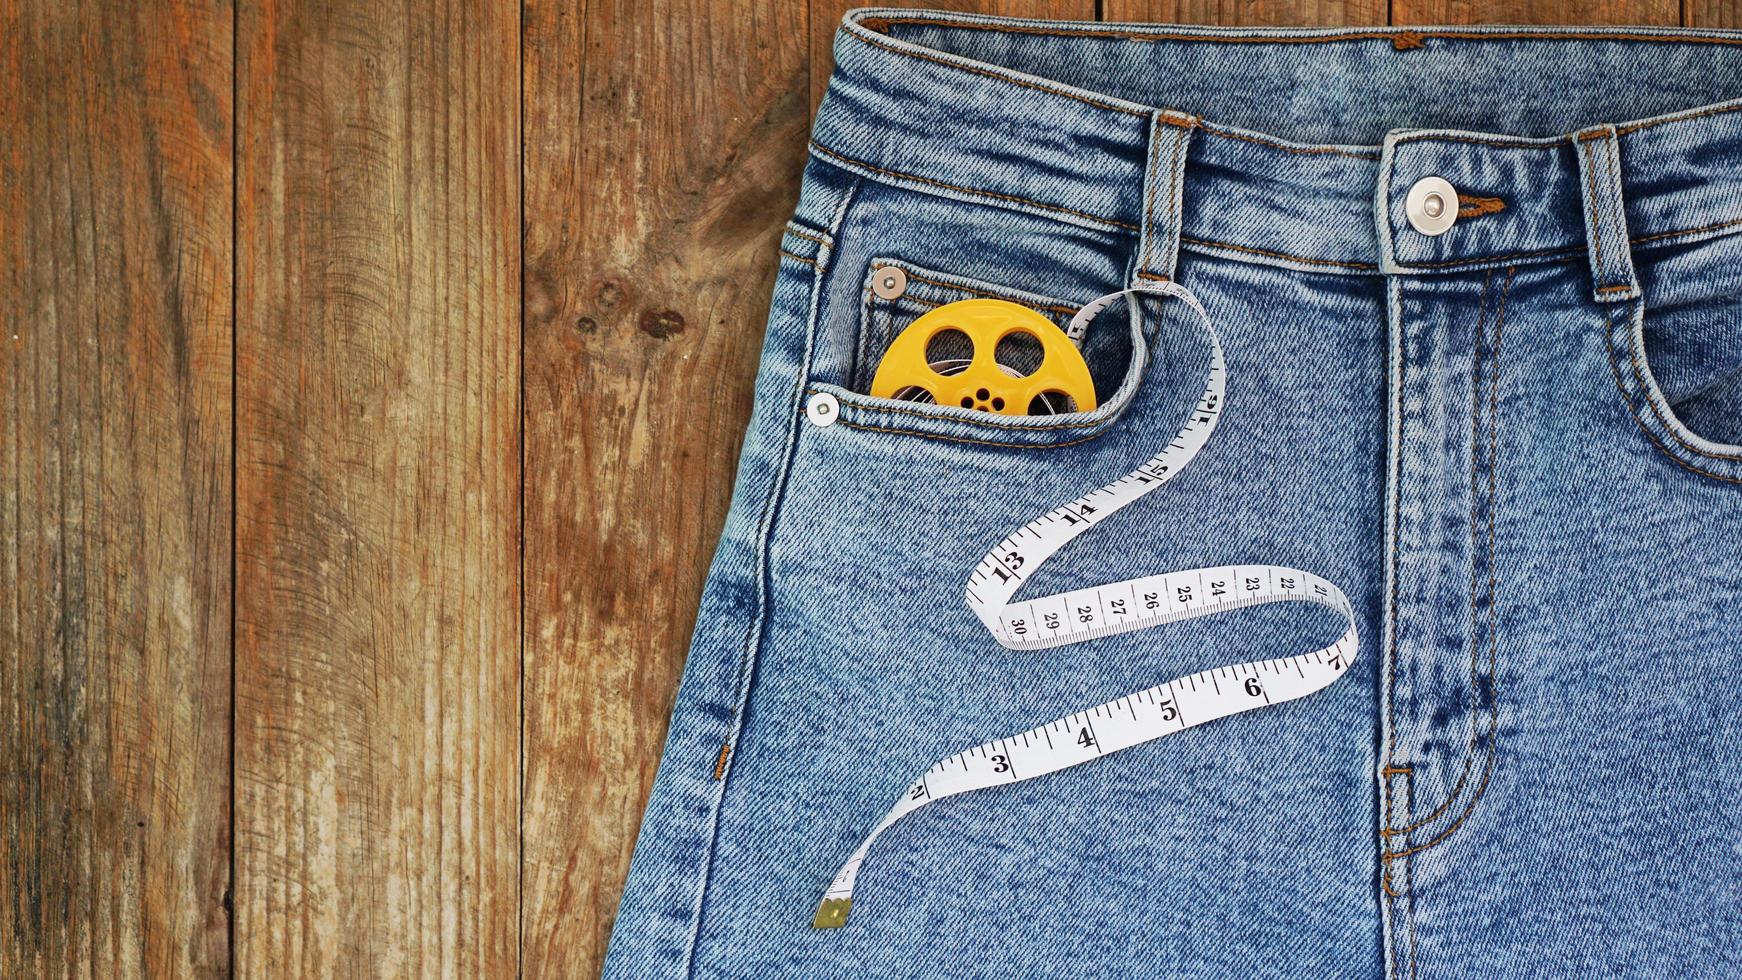 jeans e uma fita métrica. conceito de emagrecimento ou costura jeans foto